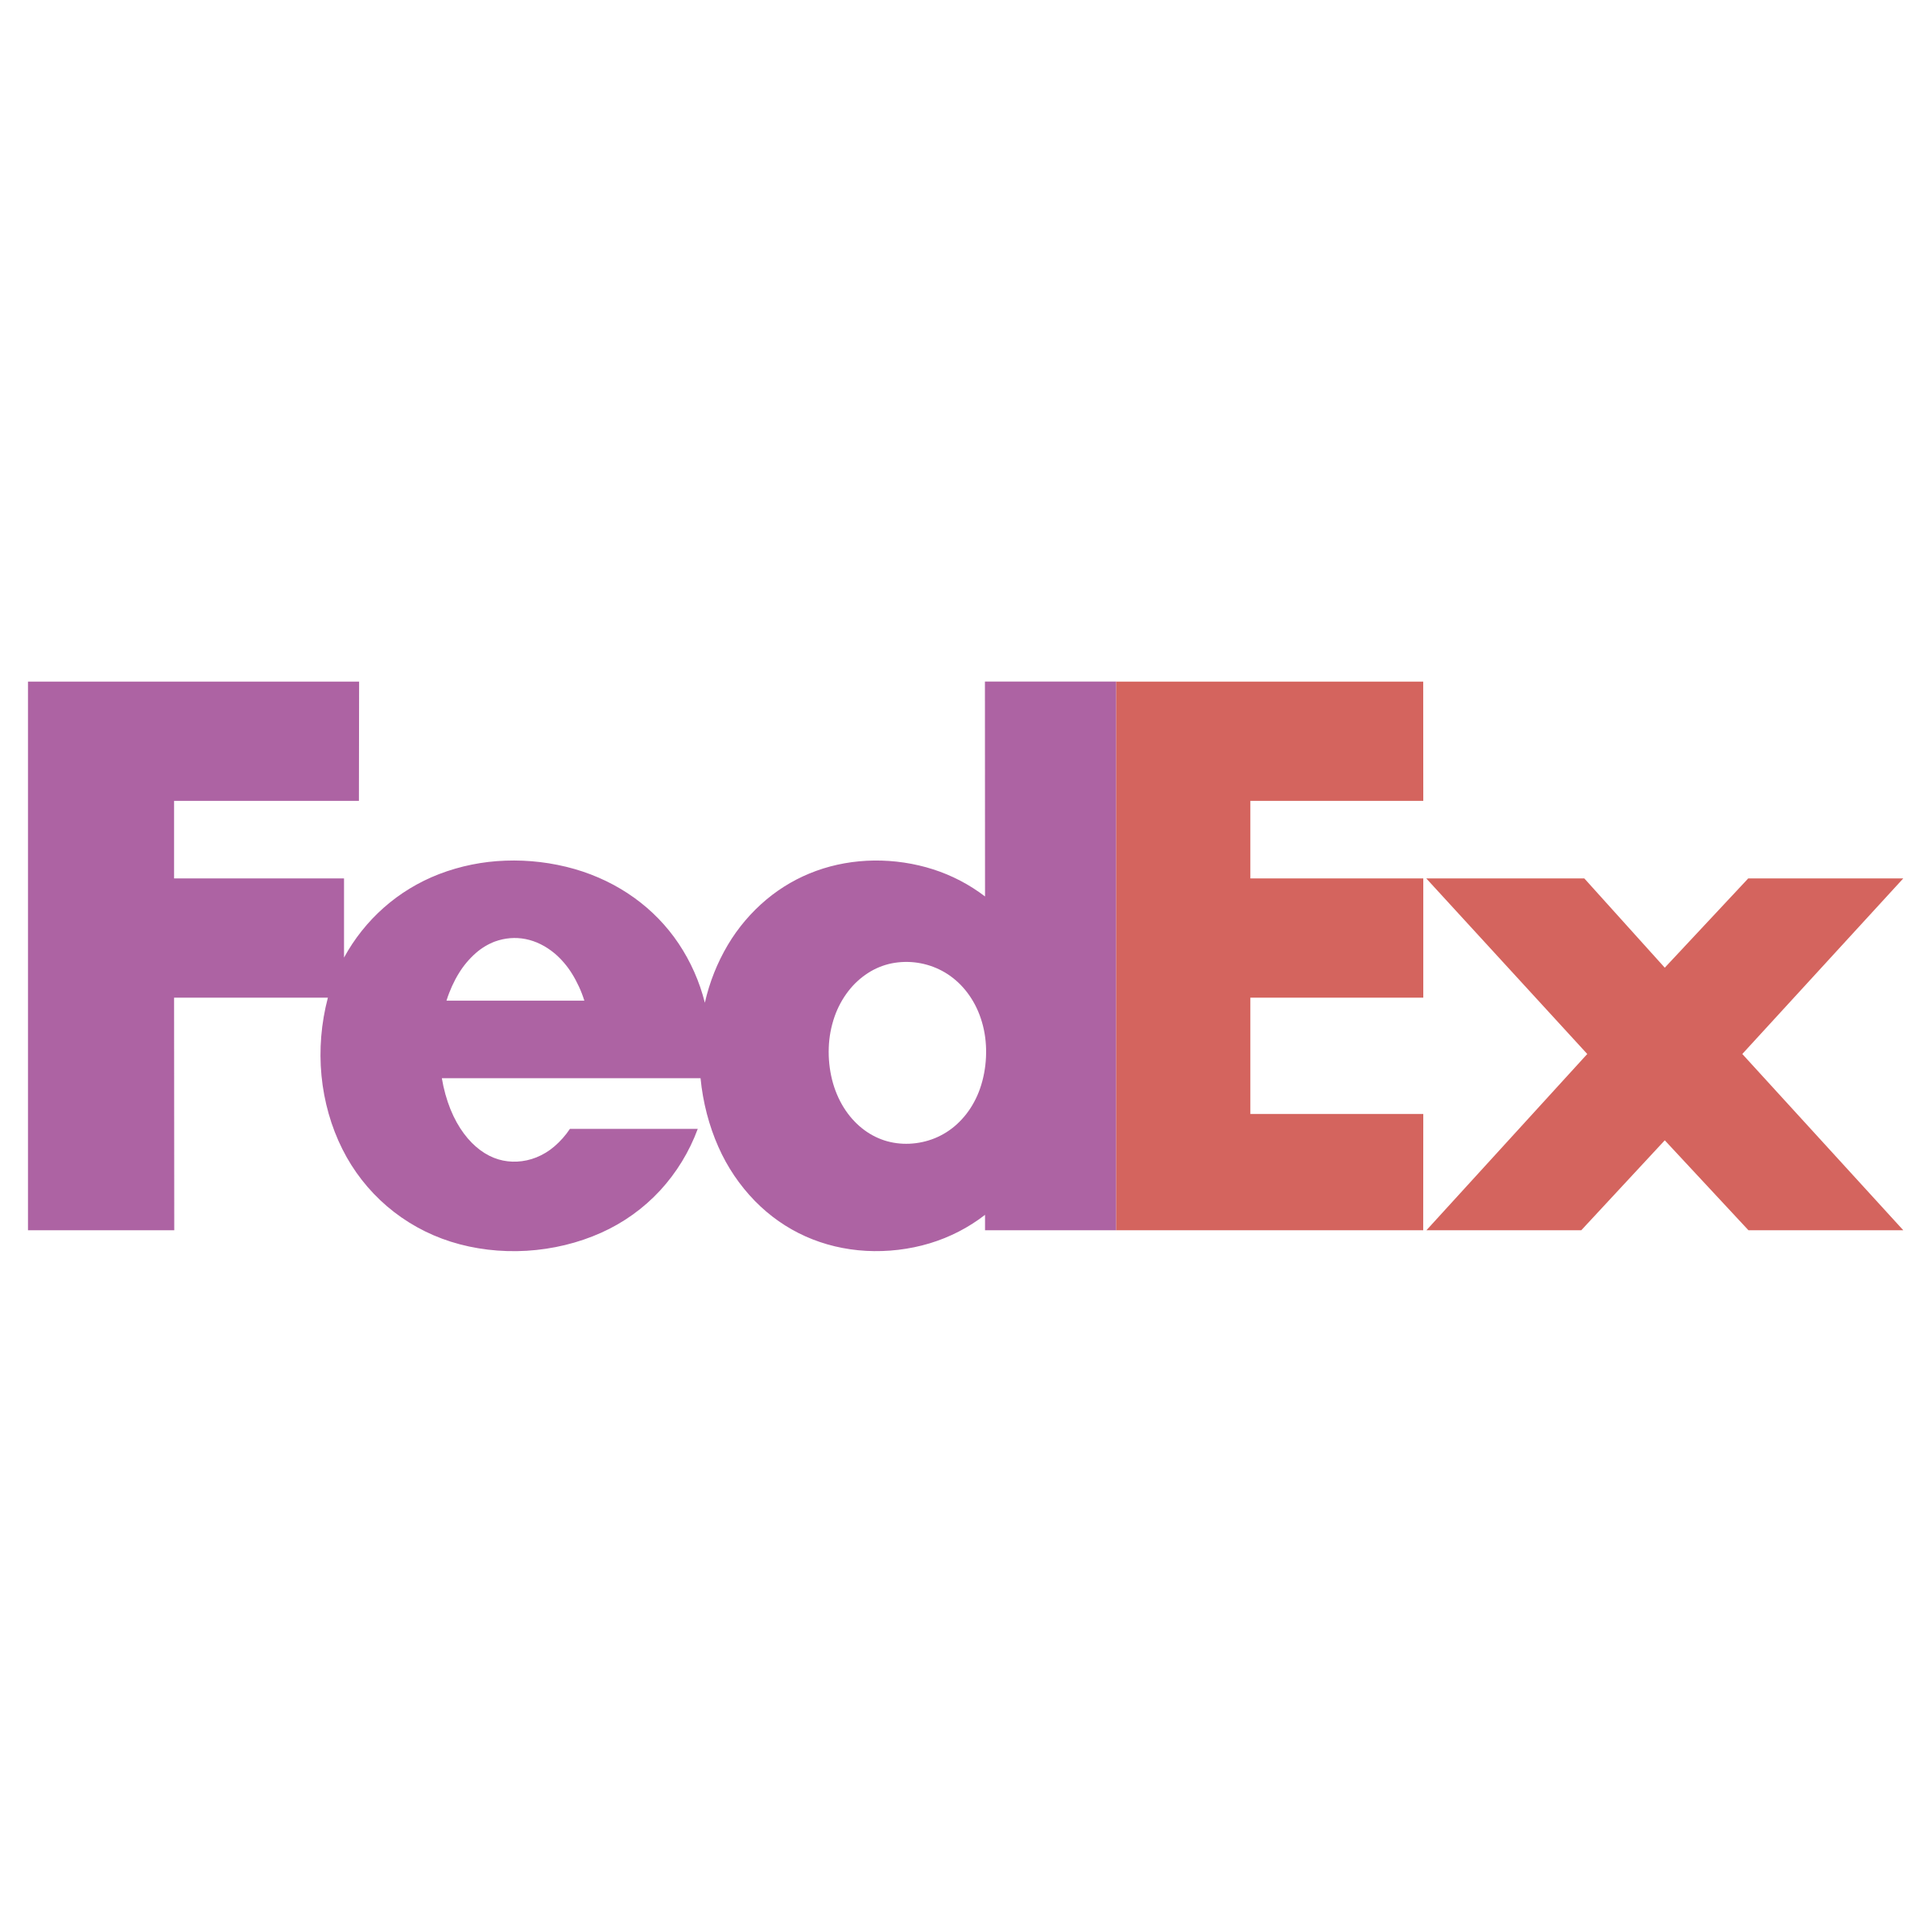 Logo Fedex Download Free Image PNG Image